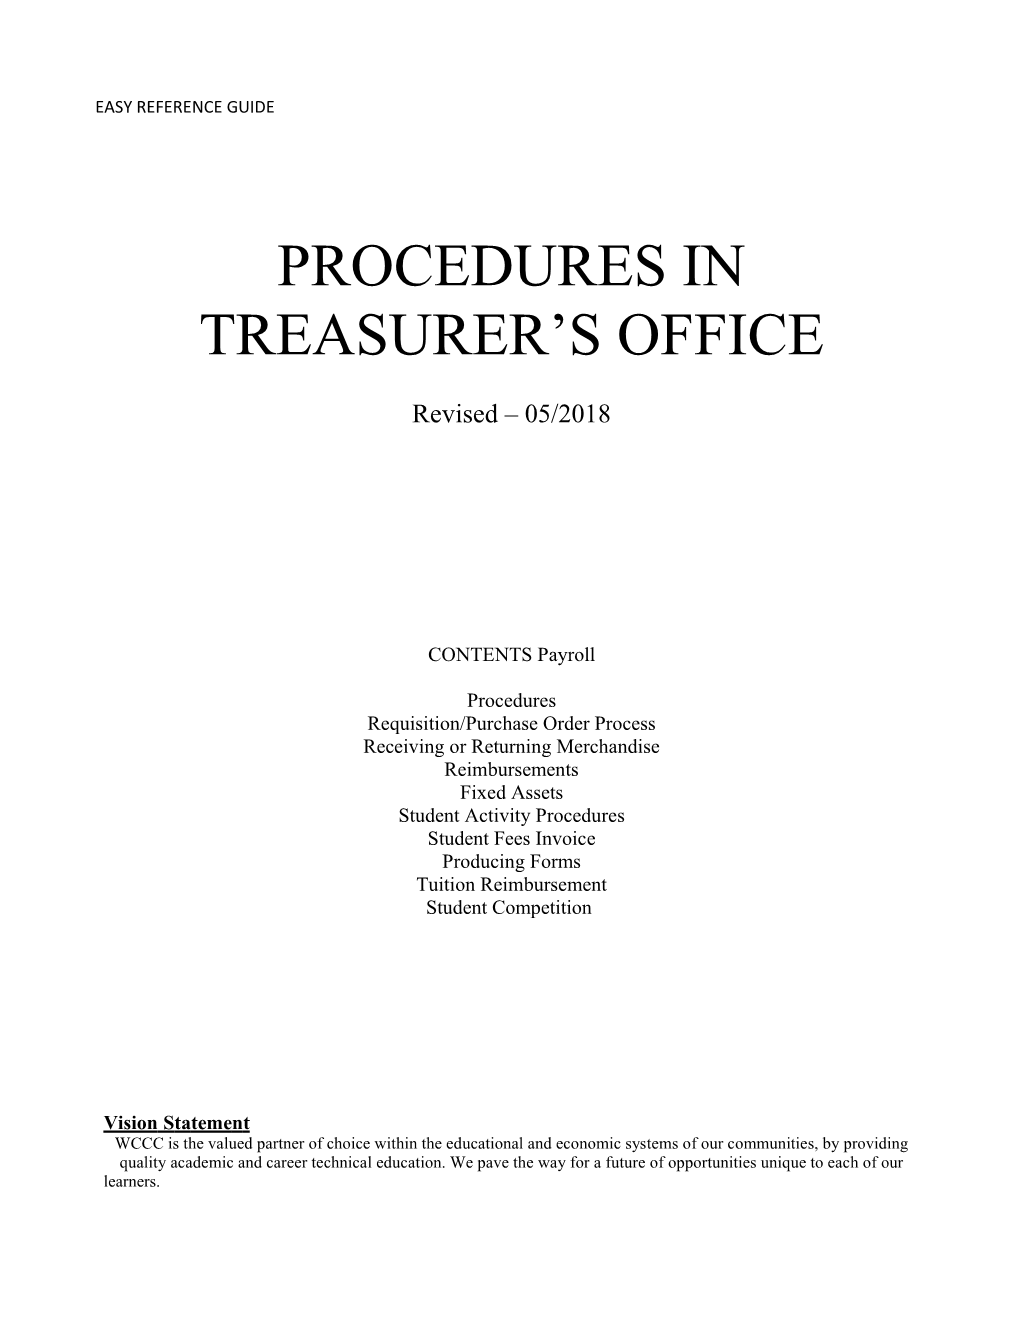 PROCEDURES in TREASURER S OFFICE Revised 05/2018